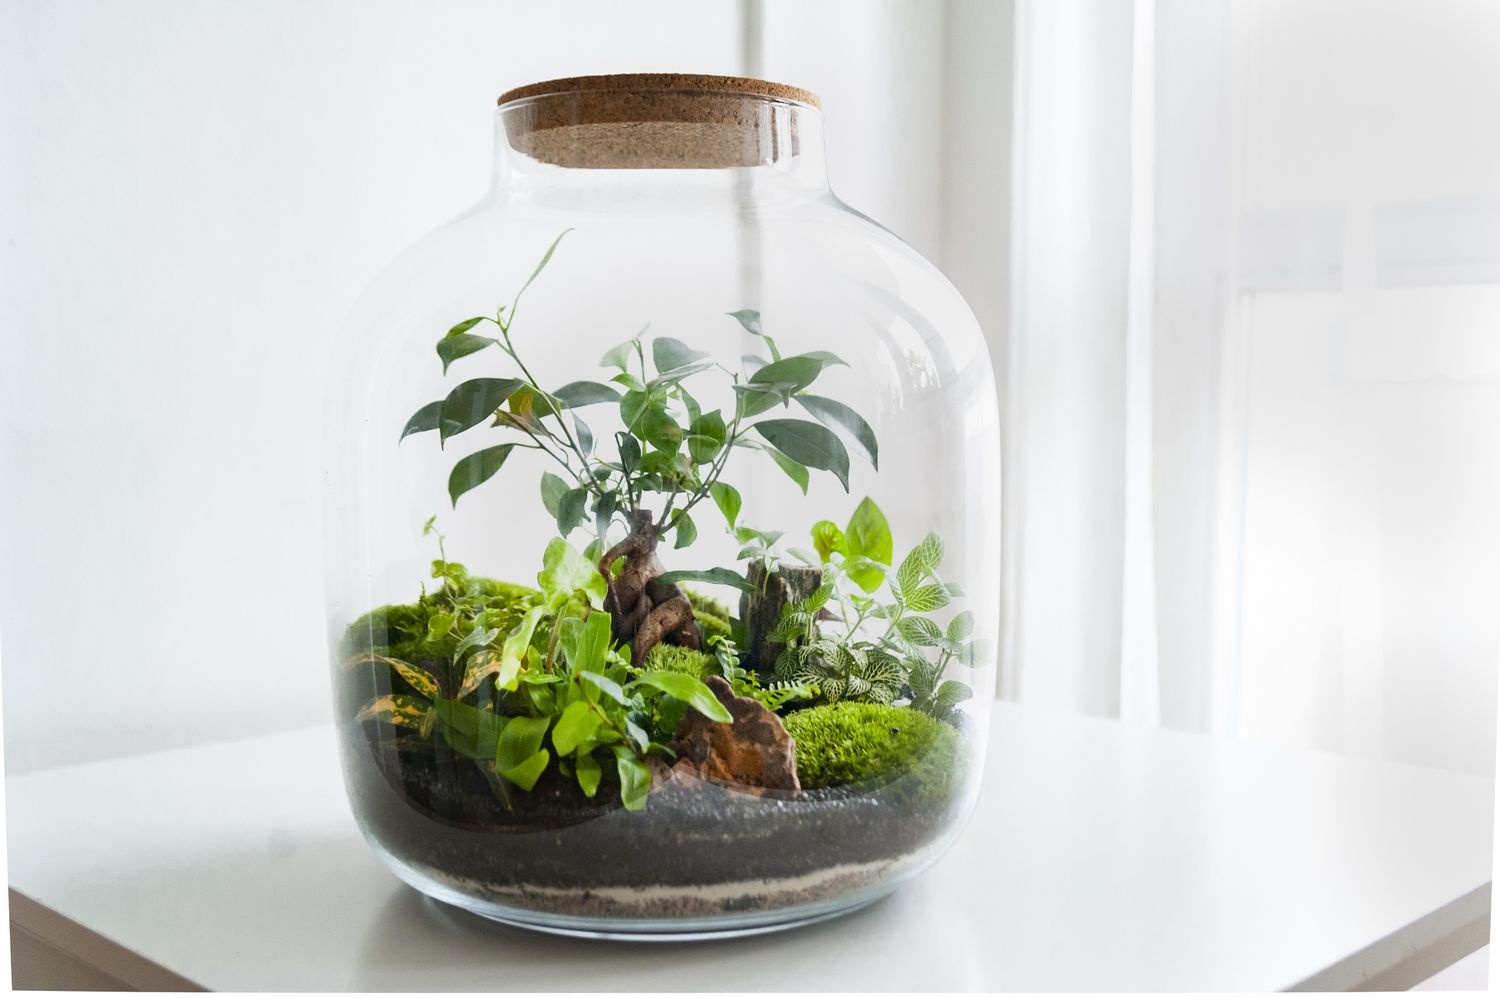 Schönes Gefäß mit lebendem Wald mit eigenem Ökosystem, Terrarium, Wald im Glas